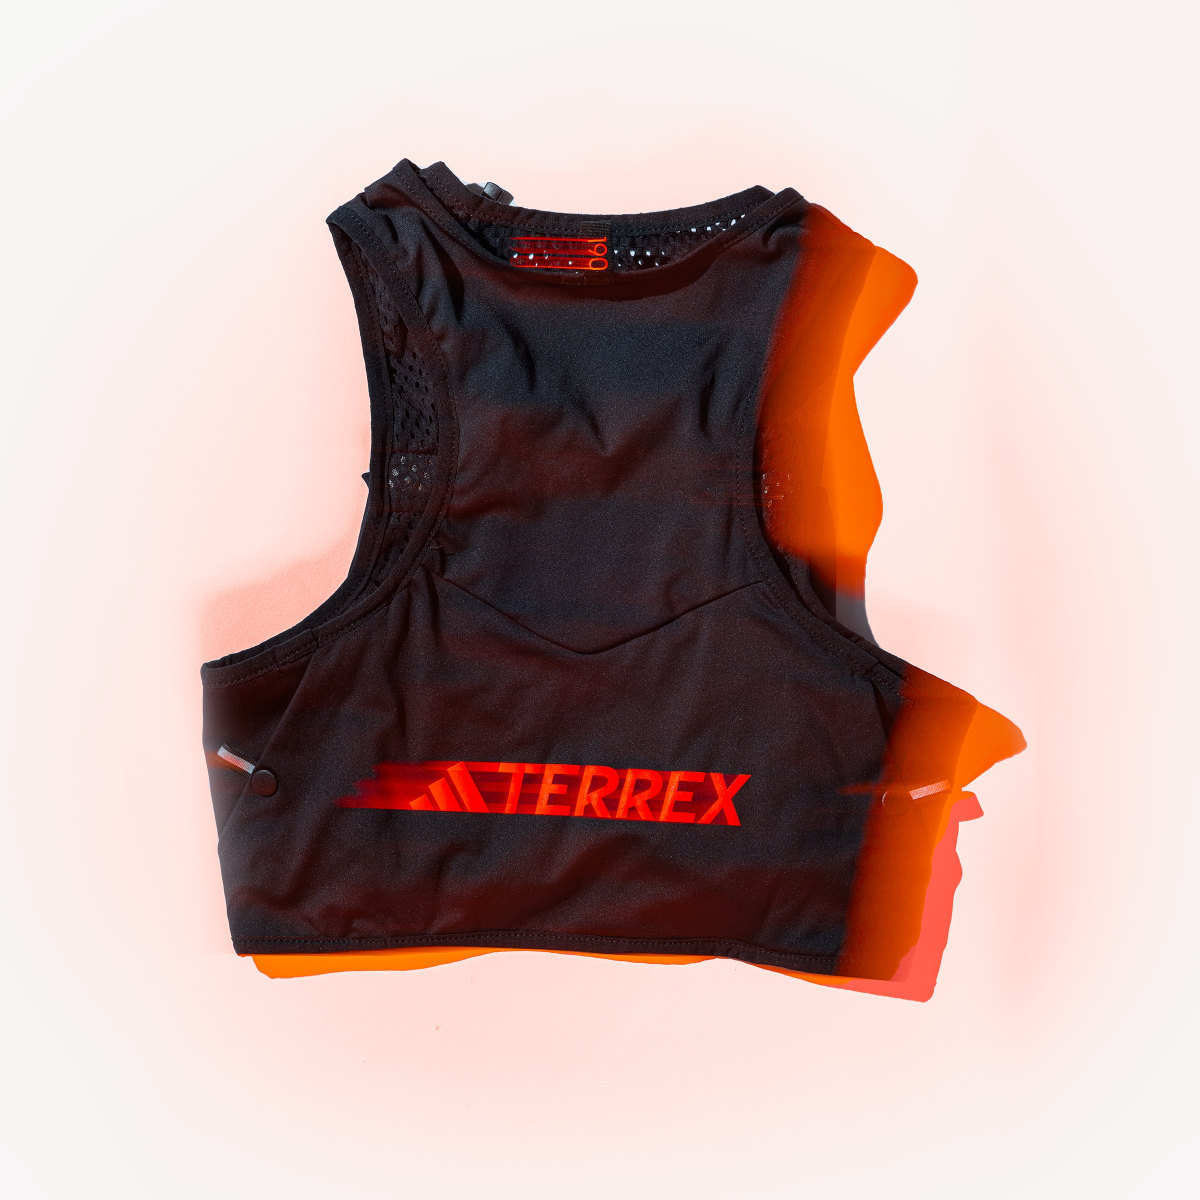 Adidas Terrex Trail Running Vest. 8